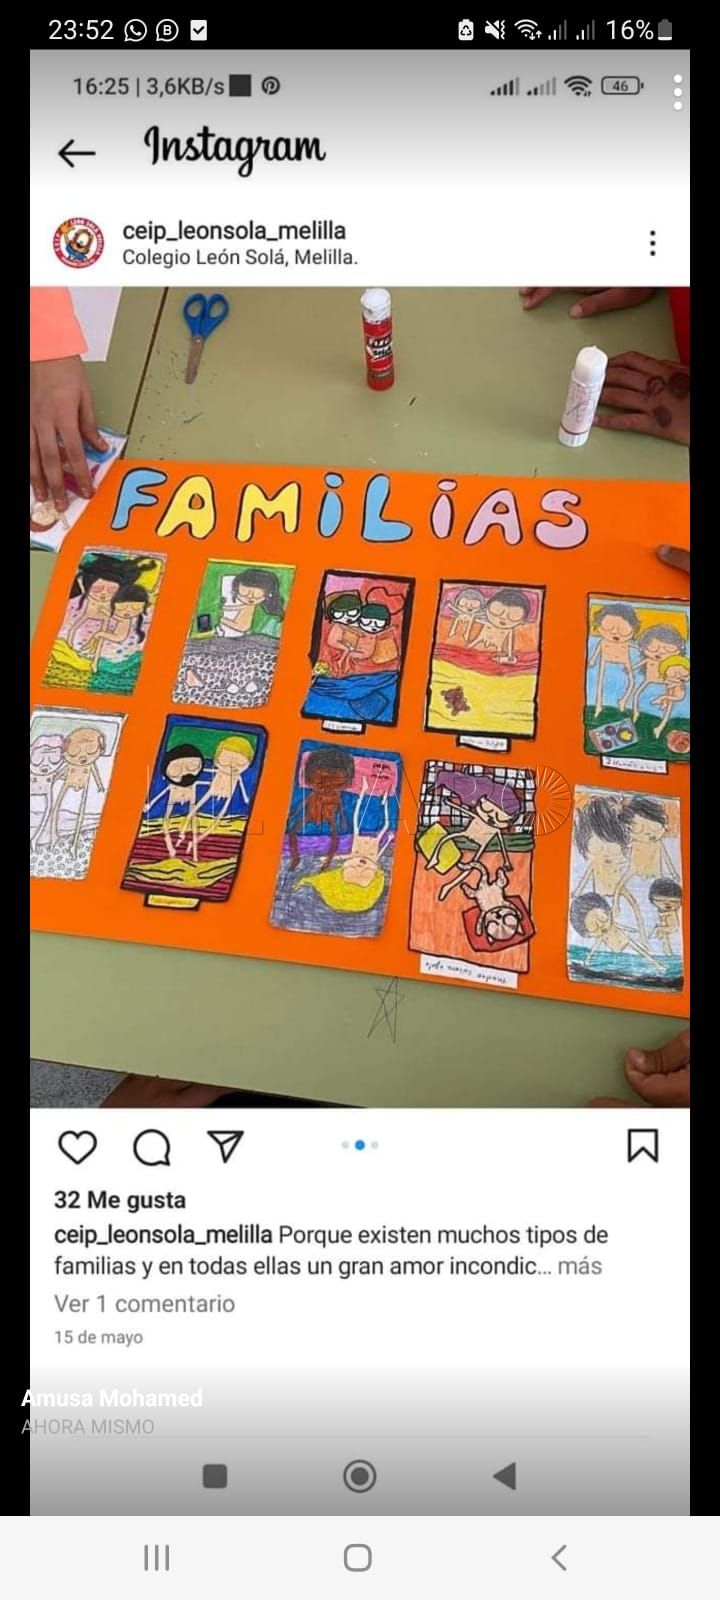 Captura de pantalla de la publicación del CEIP León Solá de Melilla promocionando el taller de diversidad famliar